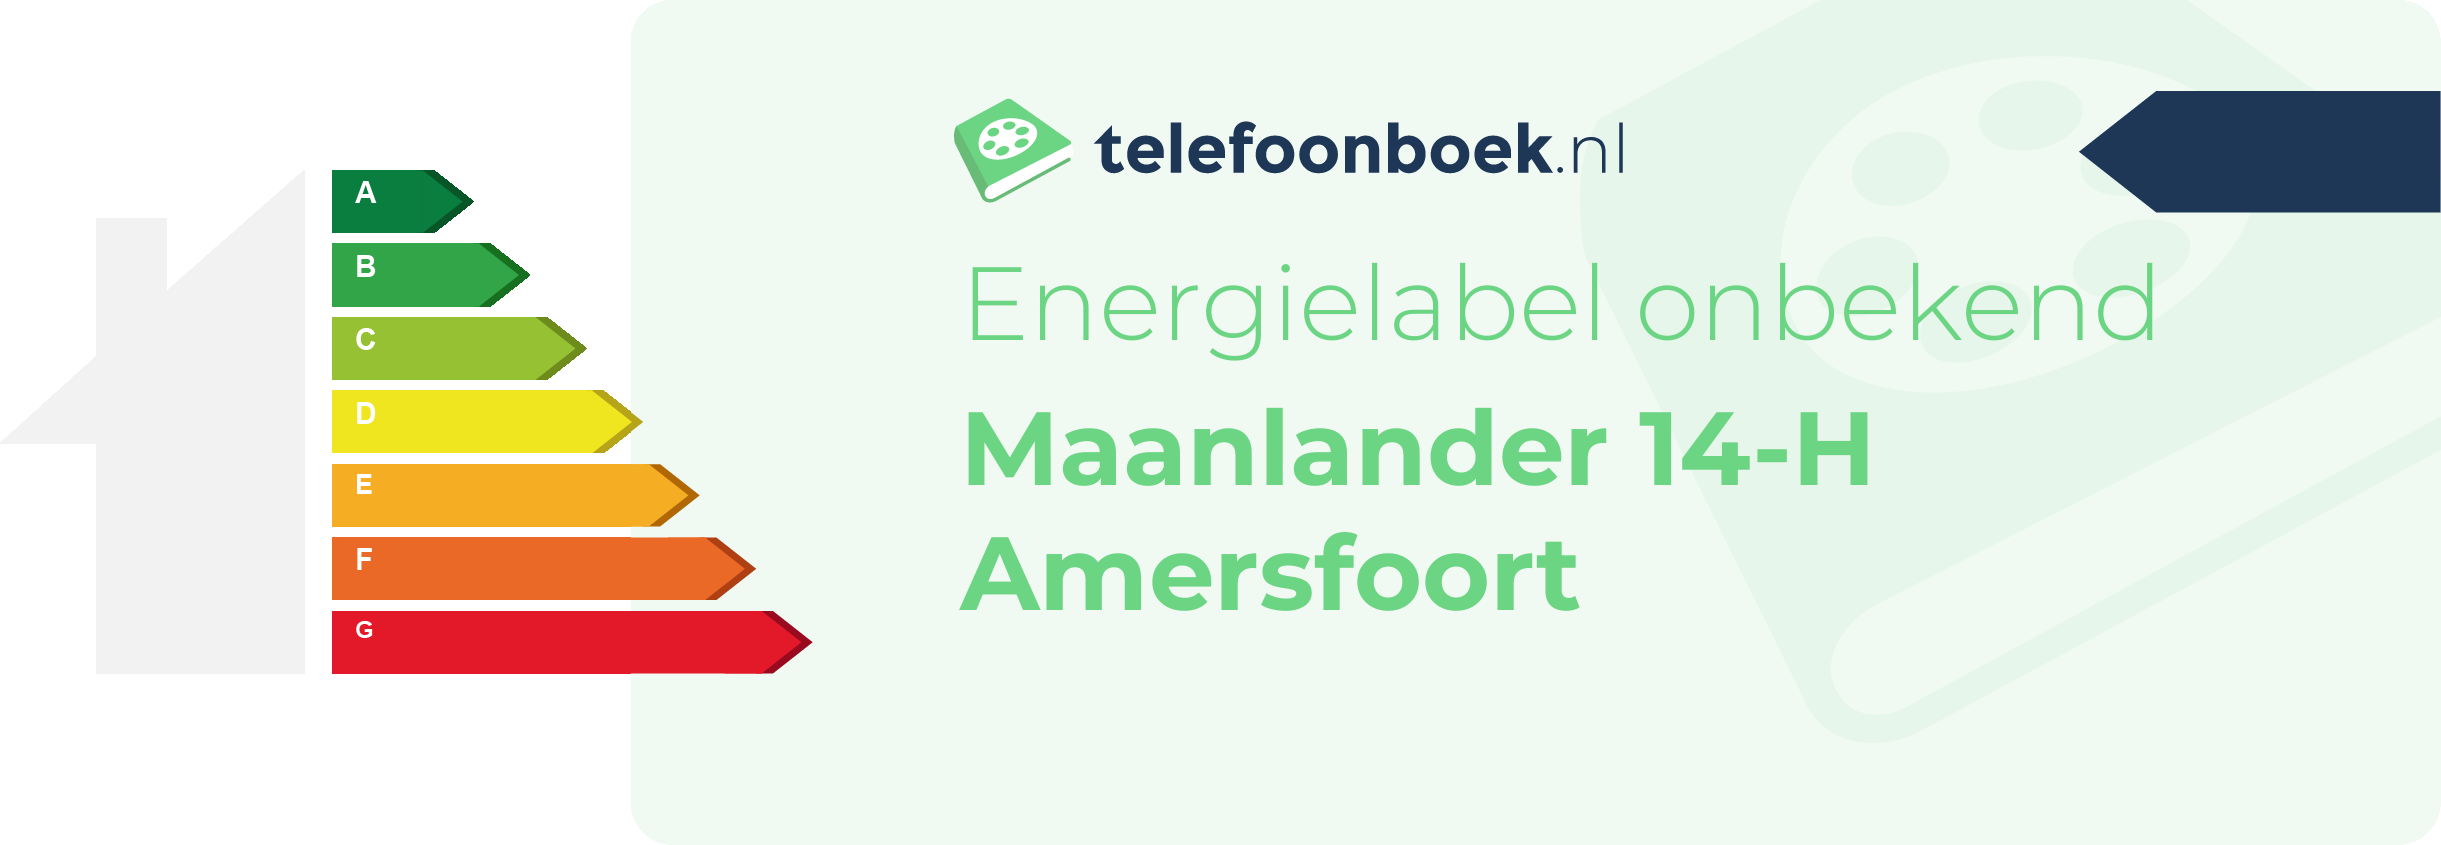 Energielabel Maanlander 14-H Amersfoort